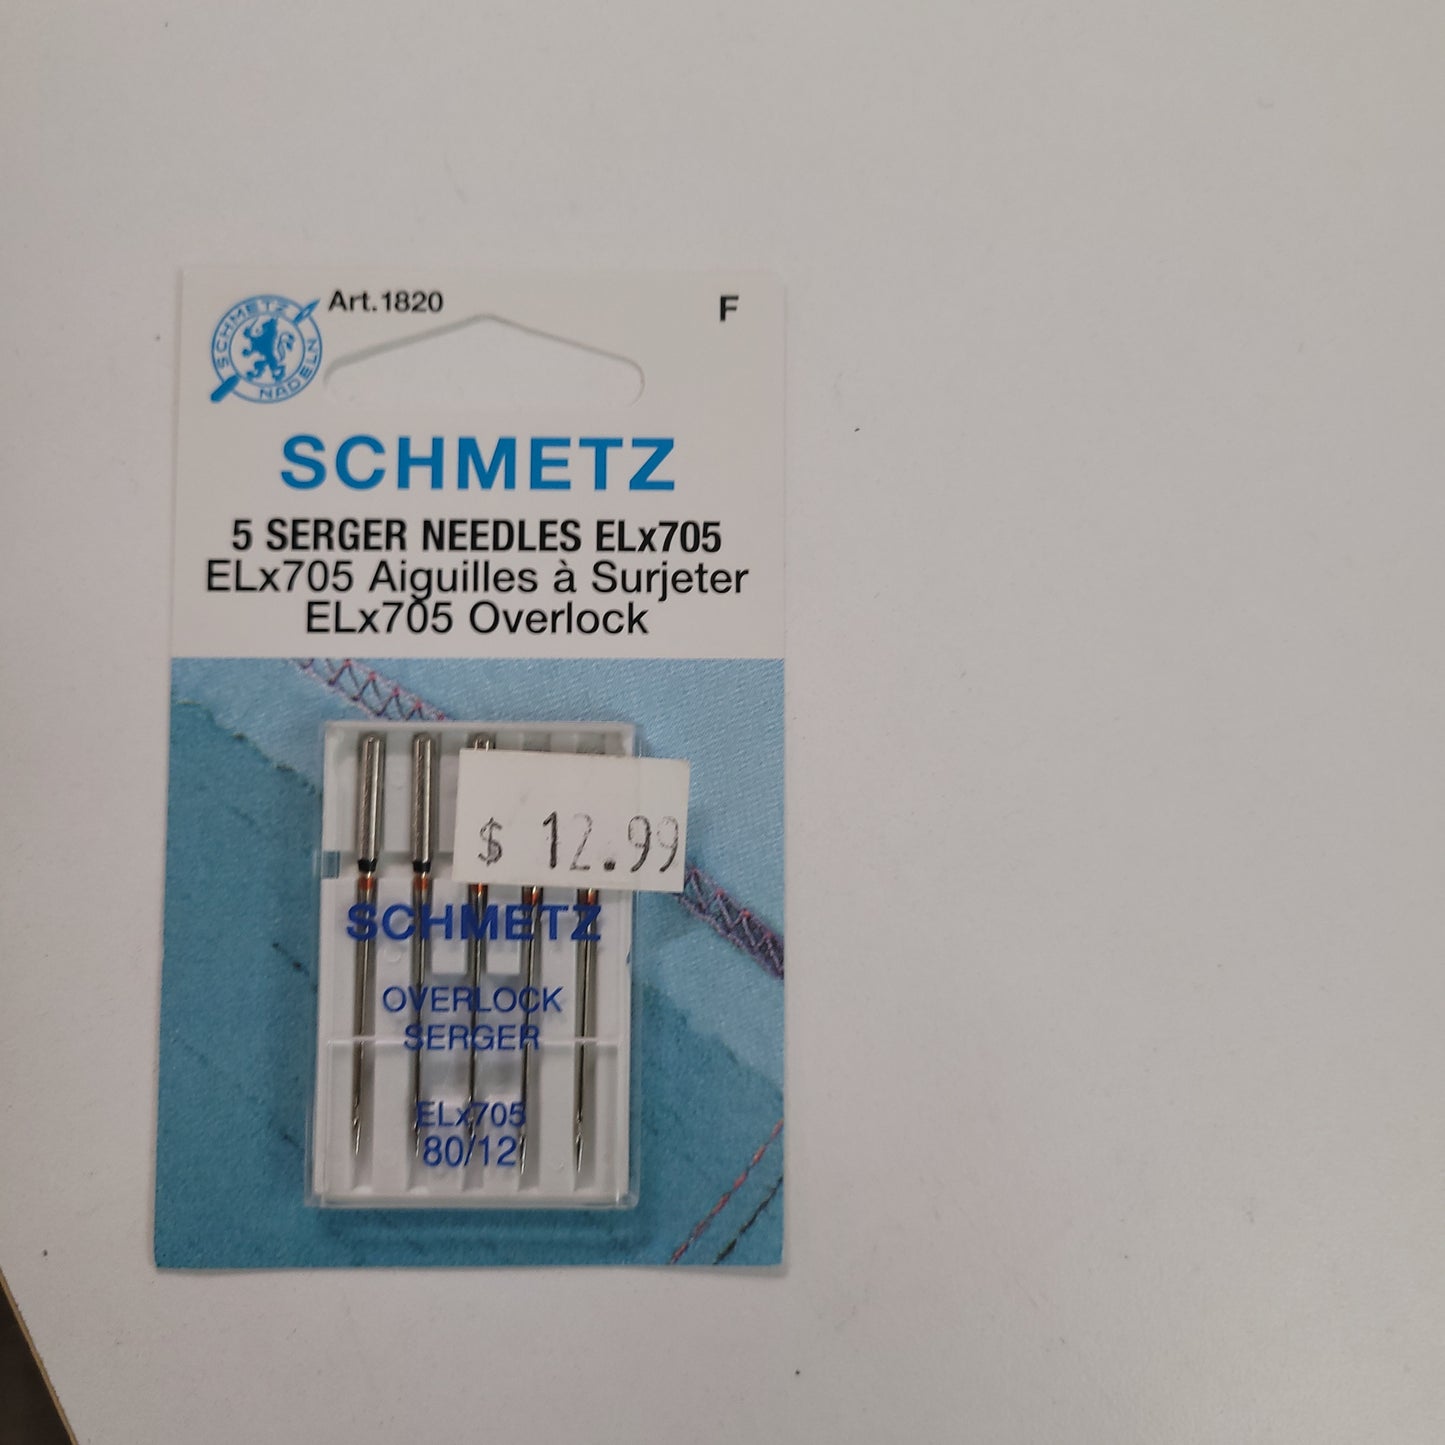 Schmetz - Aiguilles à surjeteuse ELx705